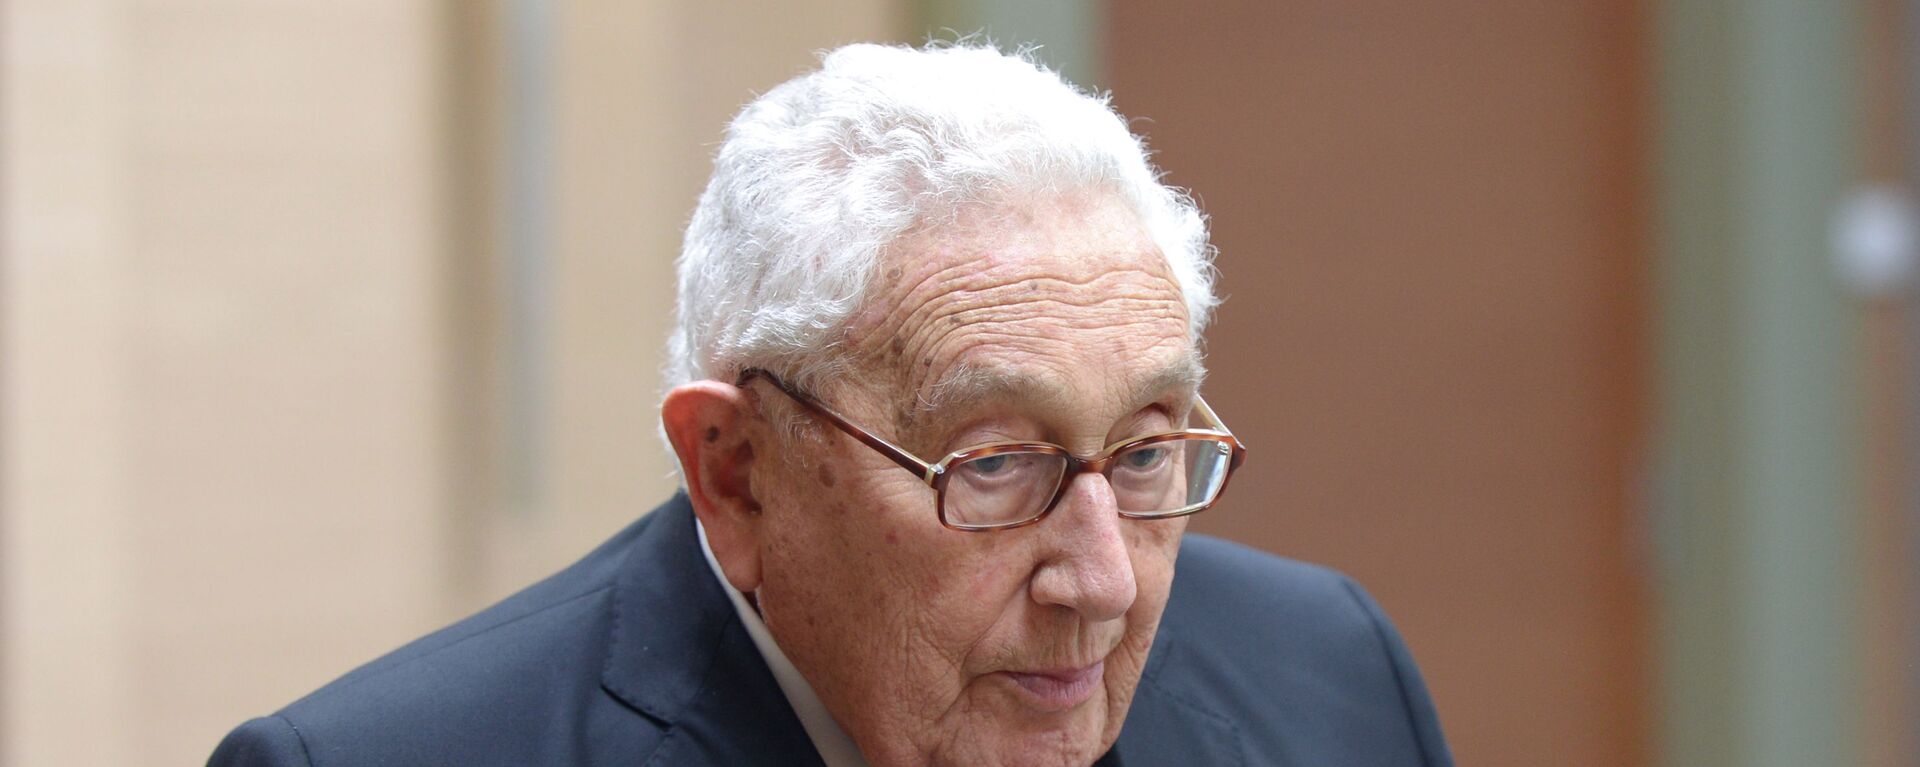 Cựu Ngoại trưởng Mỹ Henry Kissinger - Sputnik Việt Nam, 1920, 22.05.2021